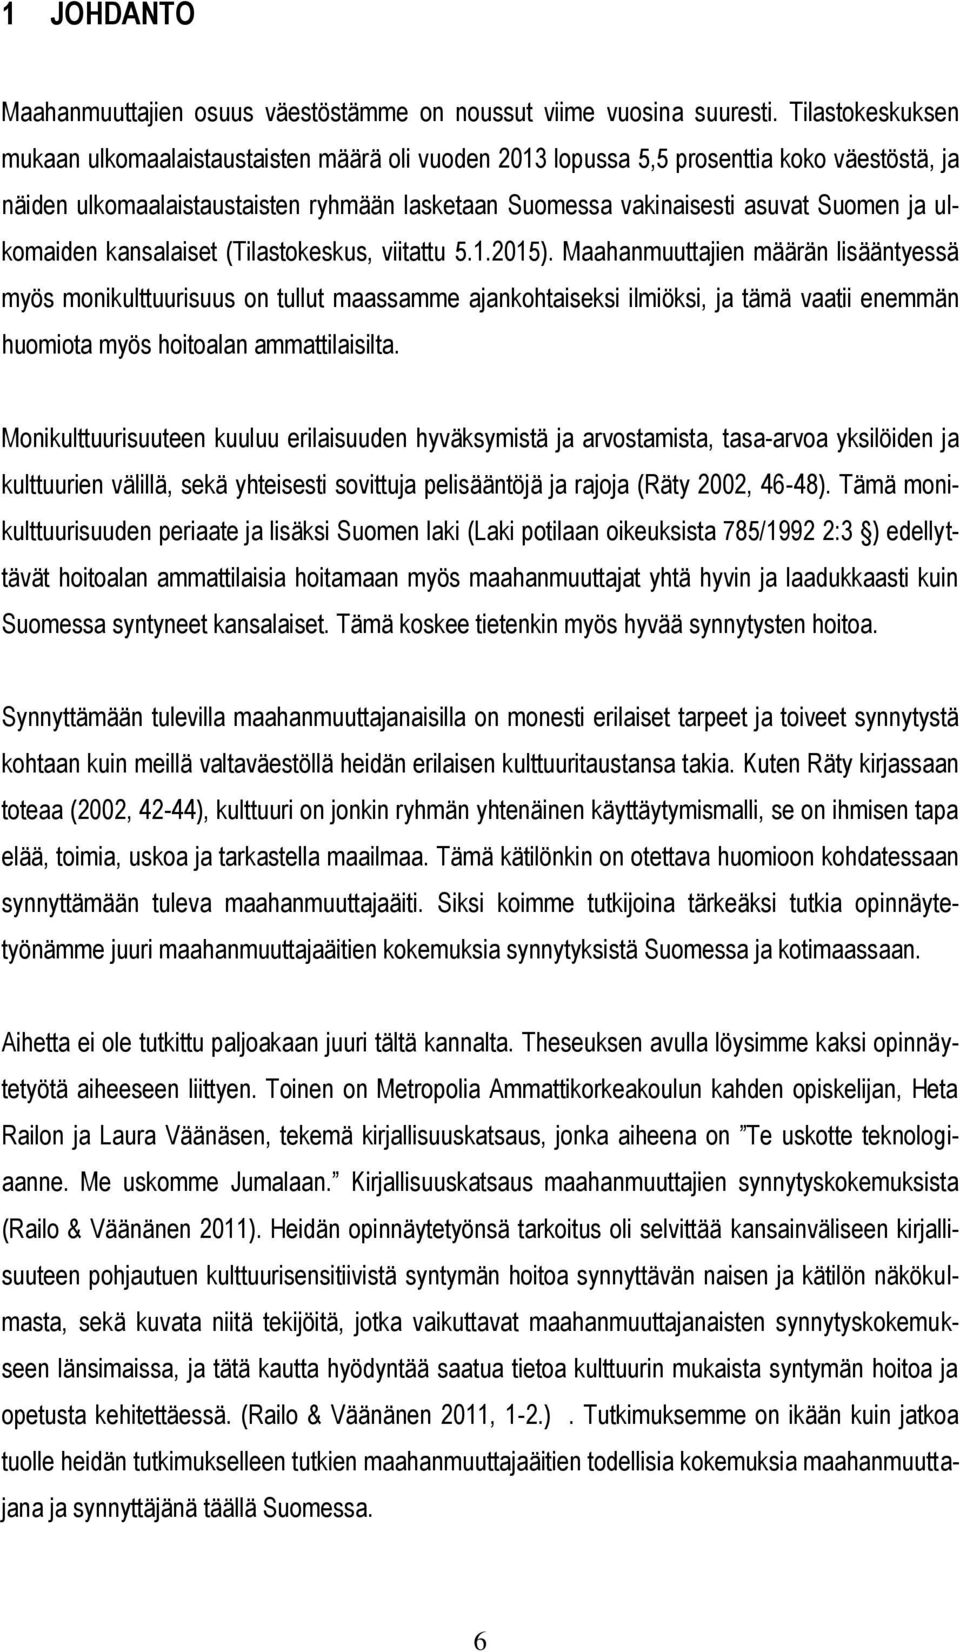 ulkomaiden kansalaiset (Tilastokeskus, viitattu 5.1.2015).